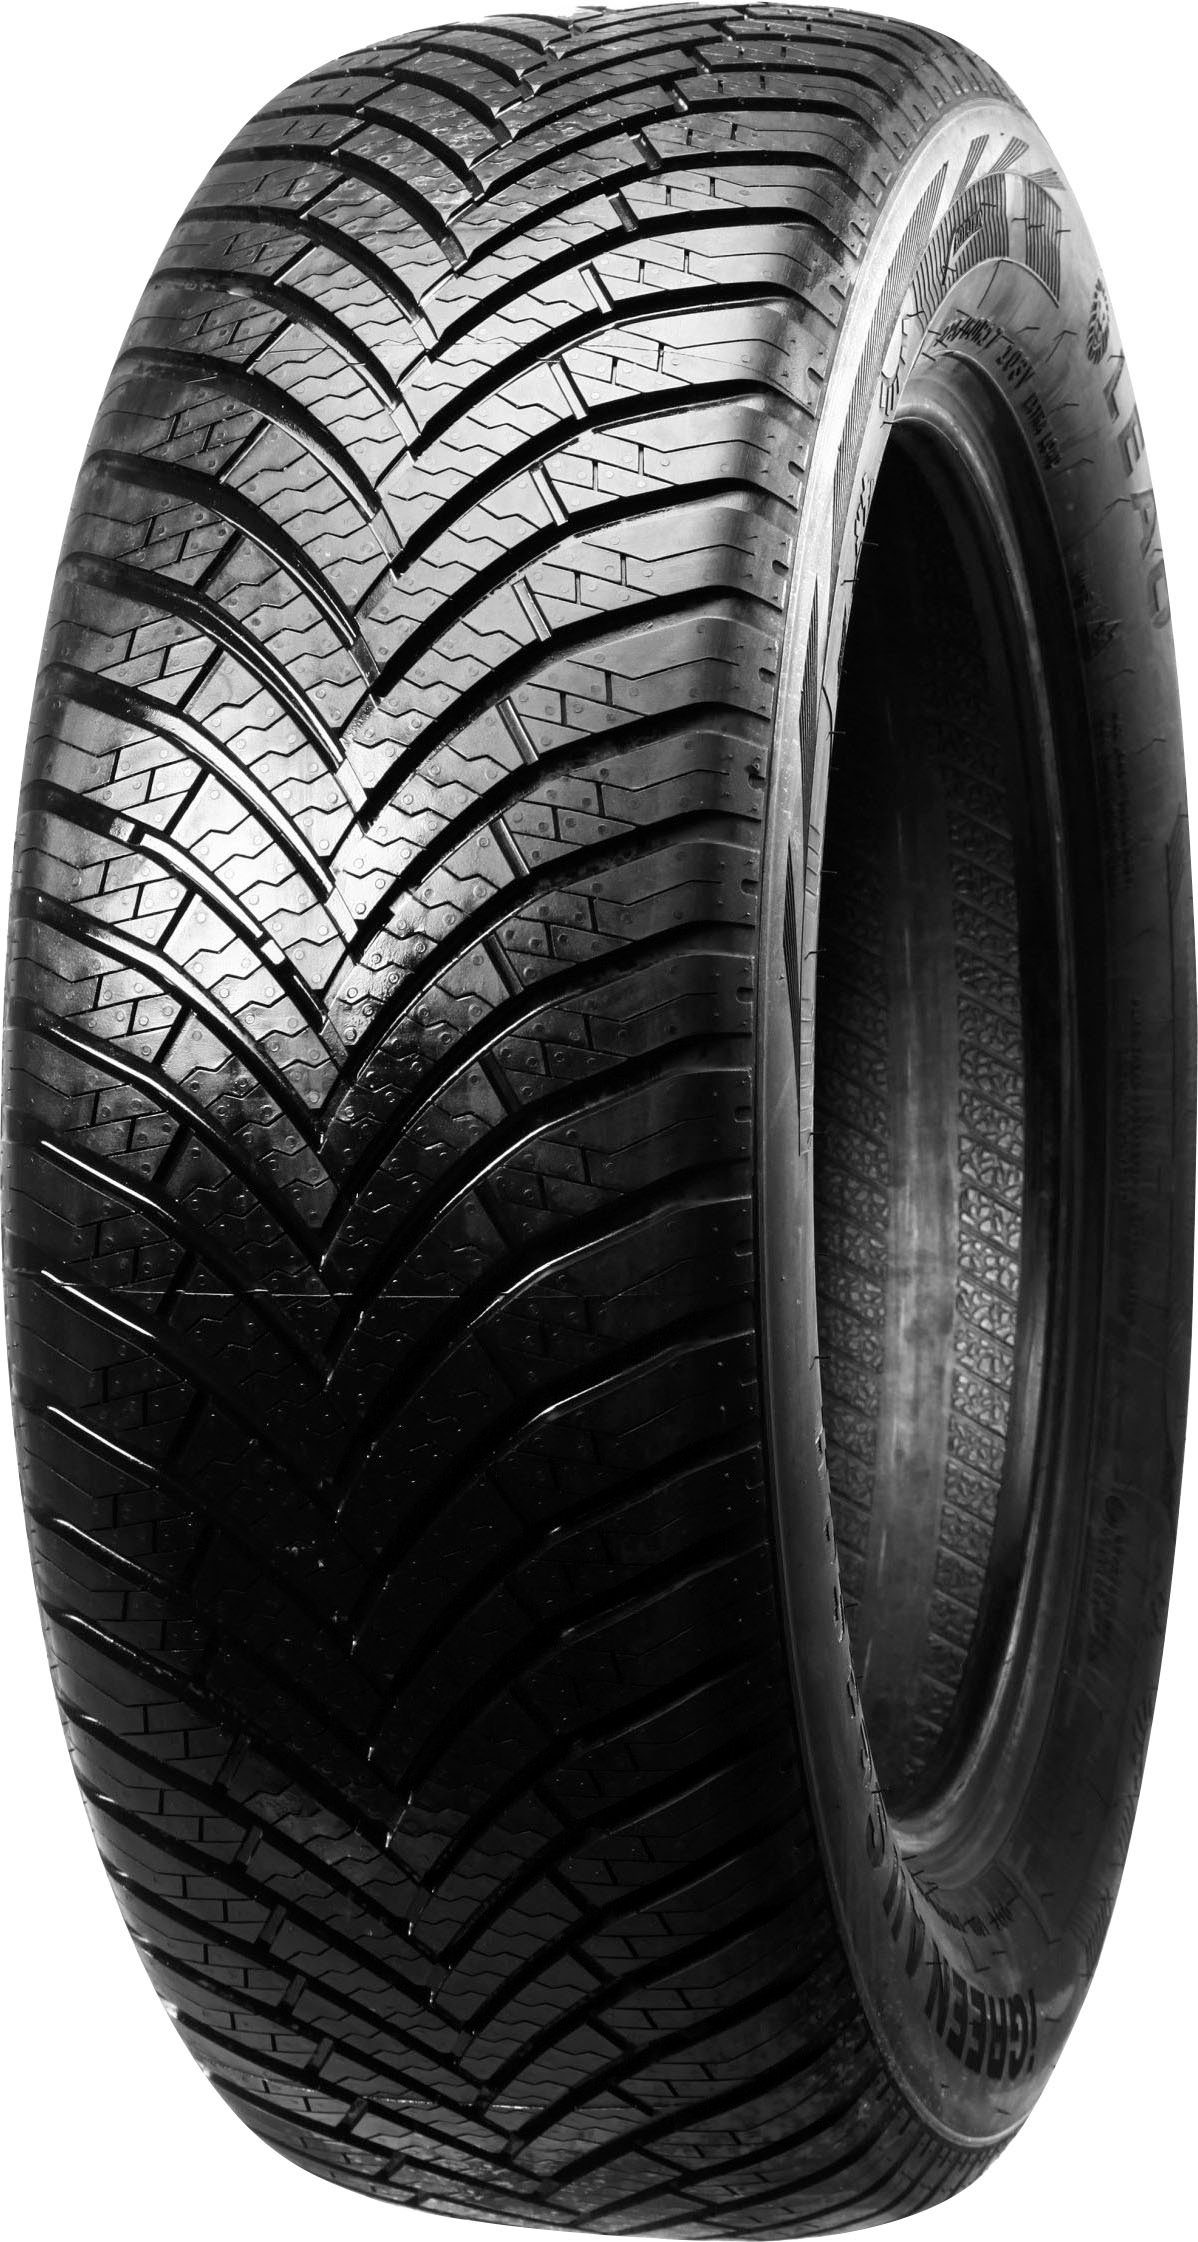 online R17 225/60 Reifen OTTO kaufen |